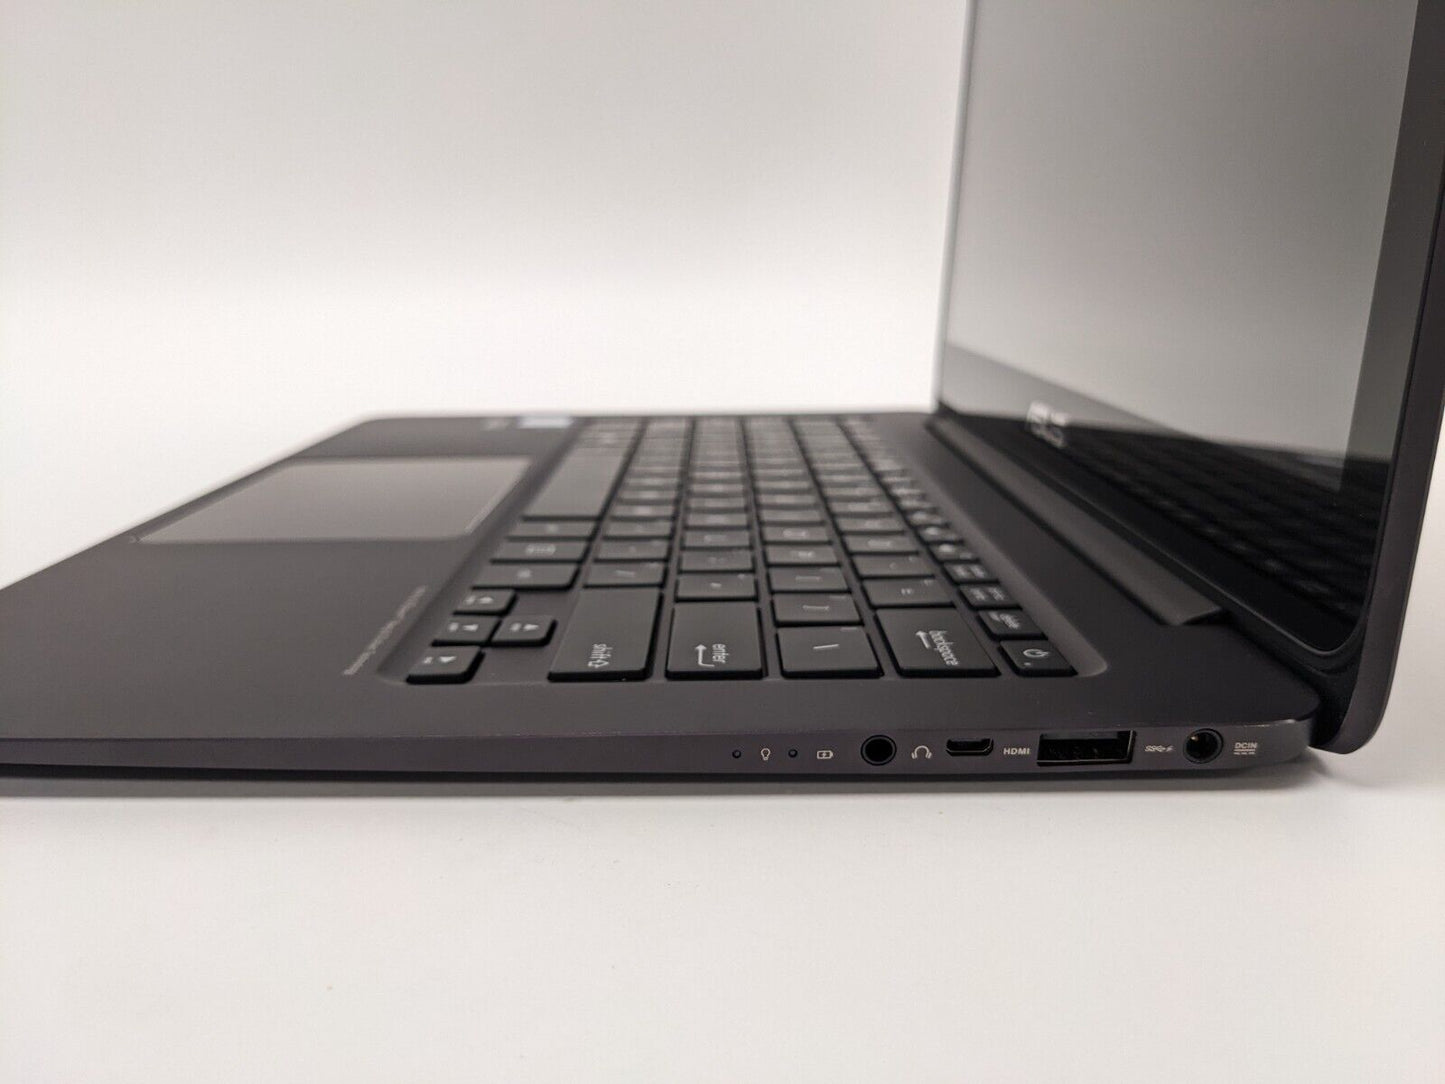 ASUS Signature Edition Laptop ZenBook UX305CA-UHM4T